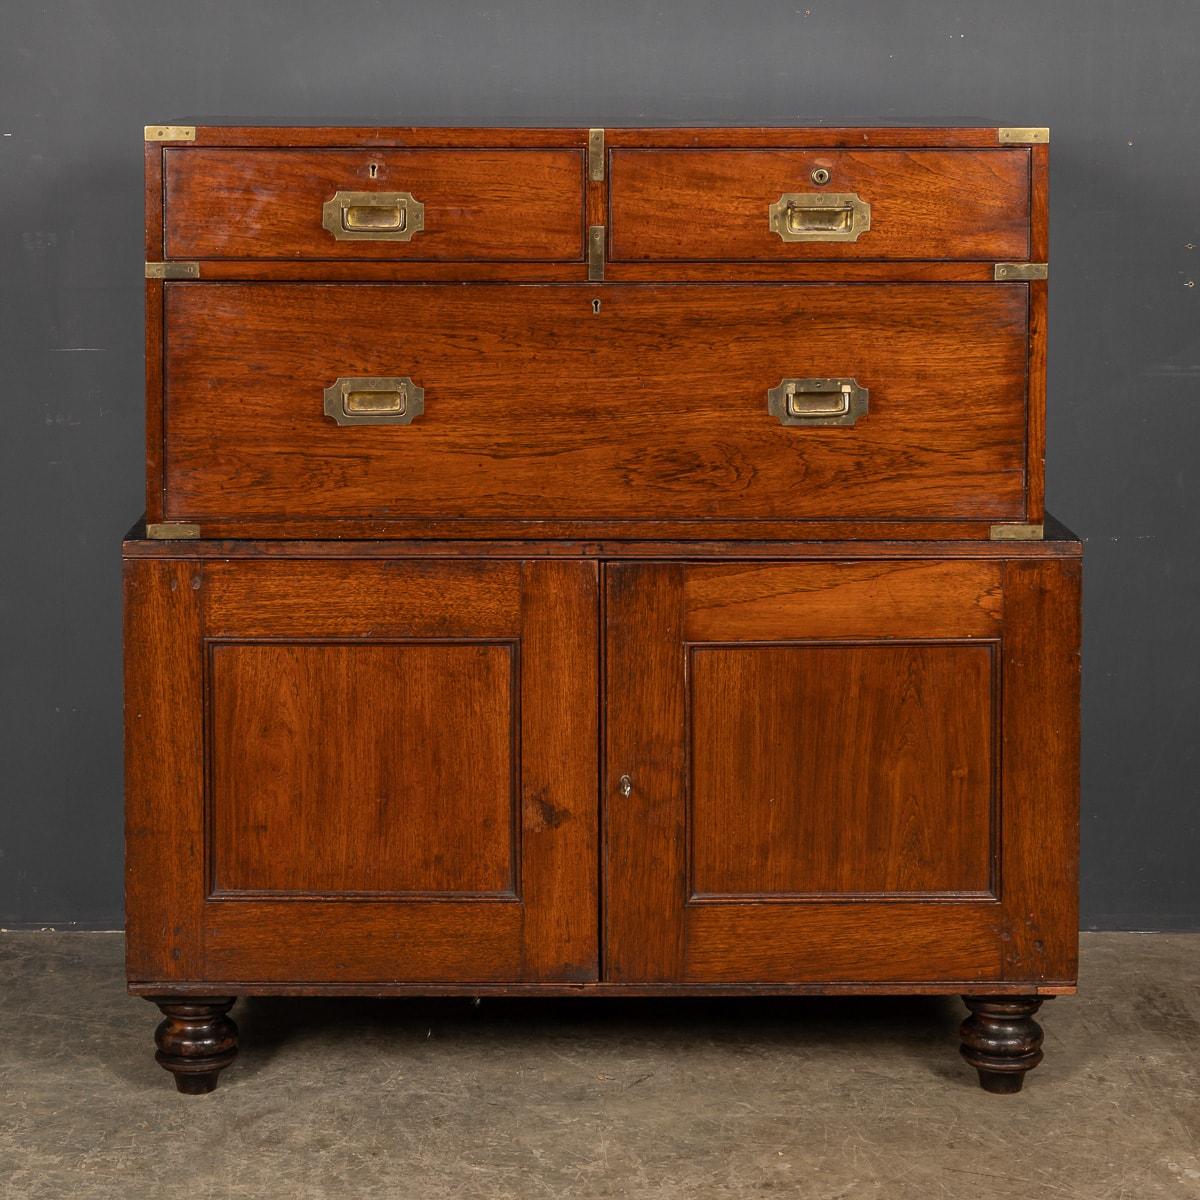 Antikes viktorianisches Campaigner-Möbelstück des 19. Jahrhunderts, gefertigt aus Mahagoni. Der obere Satz von drei Schubladen ist zweiteilig und passt genau in den unteren Schrank, so dass er auf Reisen mitgenommen werden kann. Dieses Stück hat